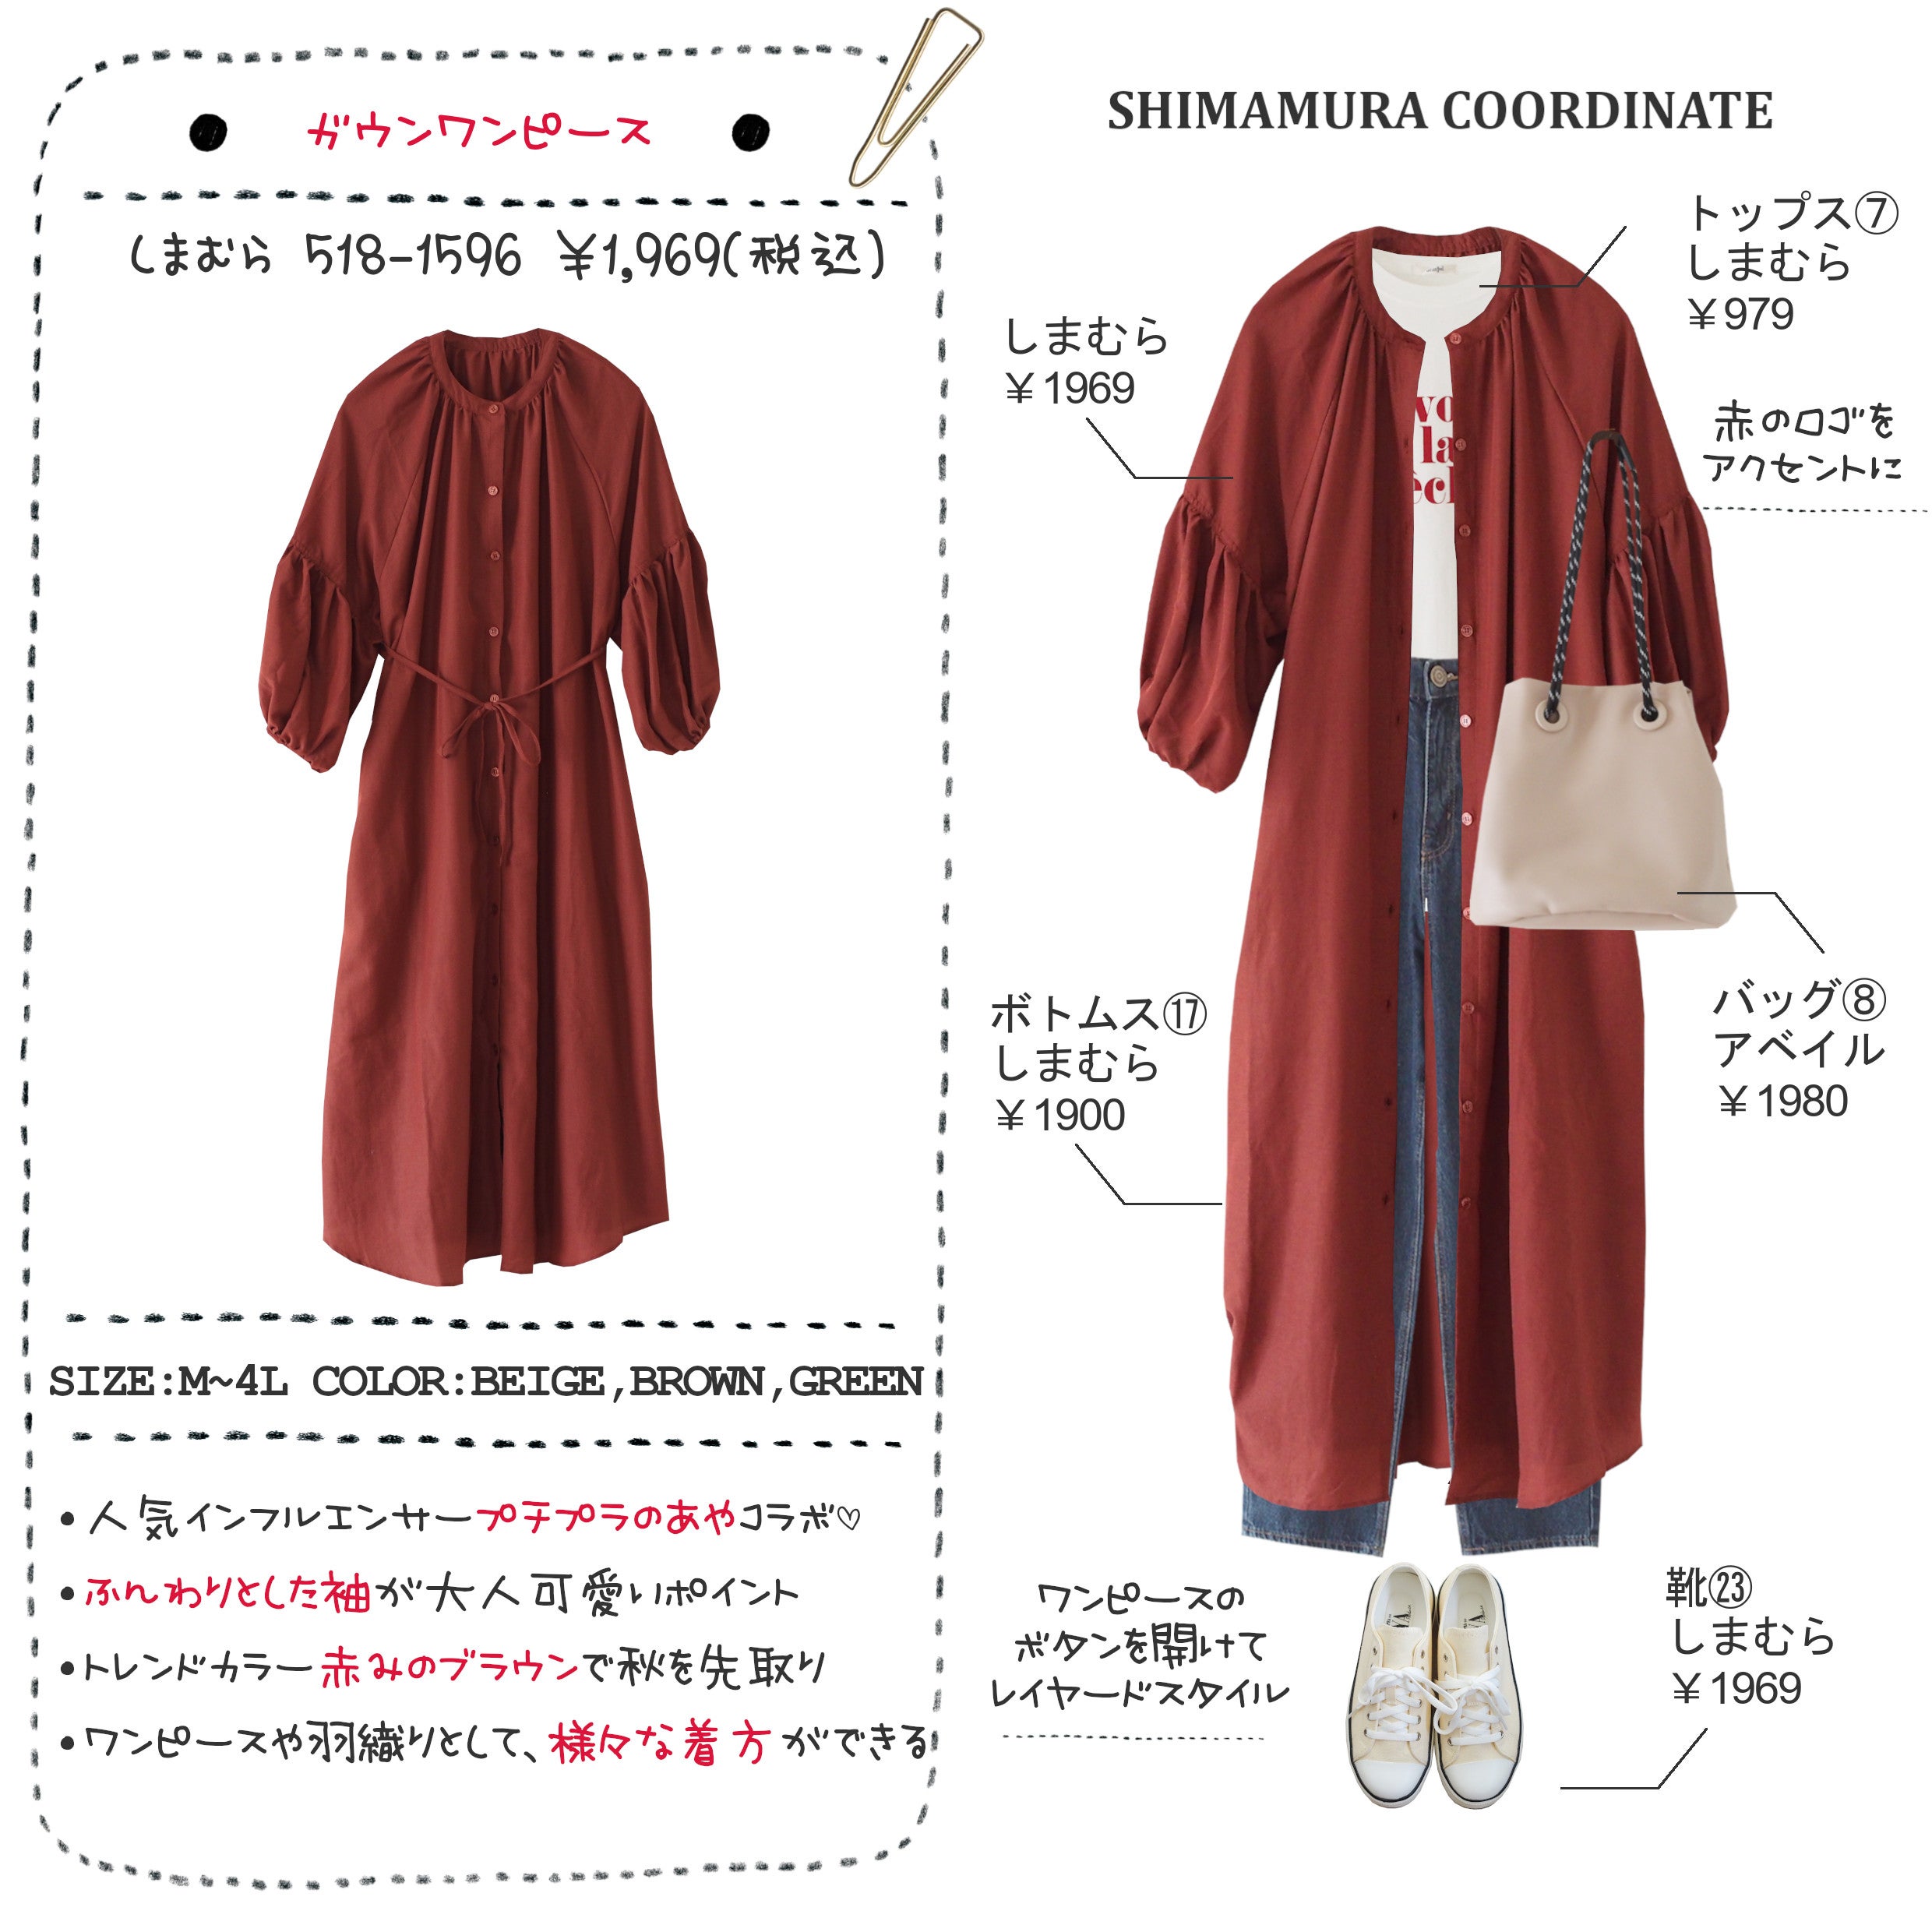 ブログ更新 しまむら 様々な着方が楽しめる 人気のプチプラのあやコラボ 秋色ワンピース しまむら1万円コーディネート